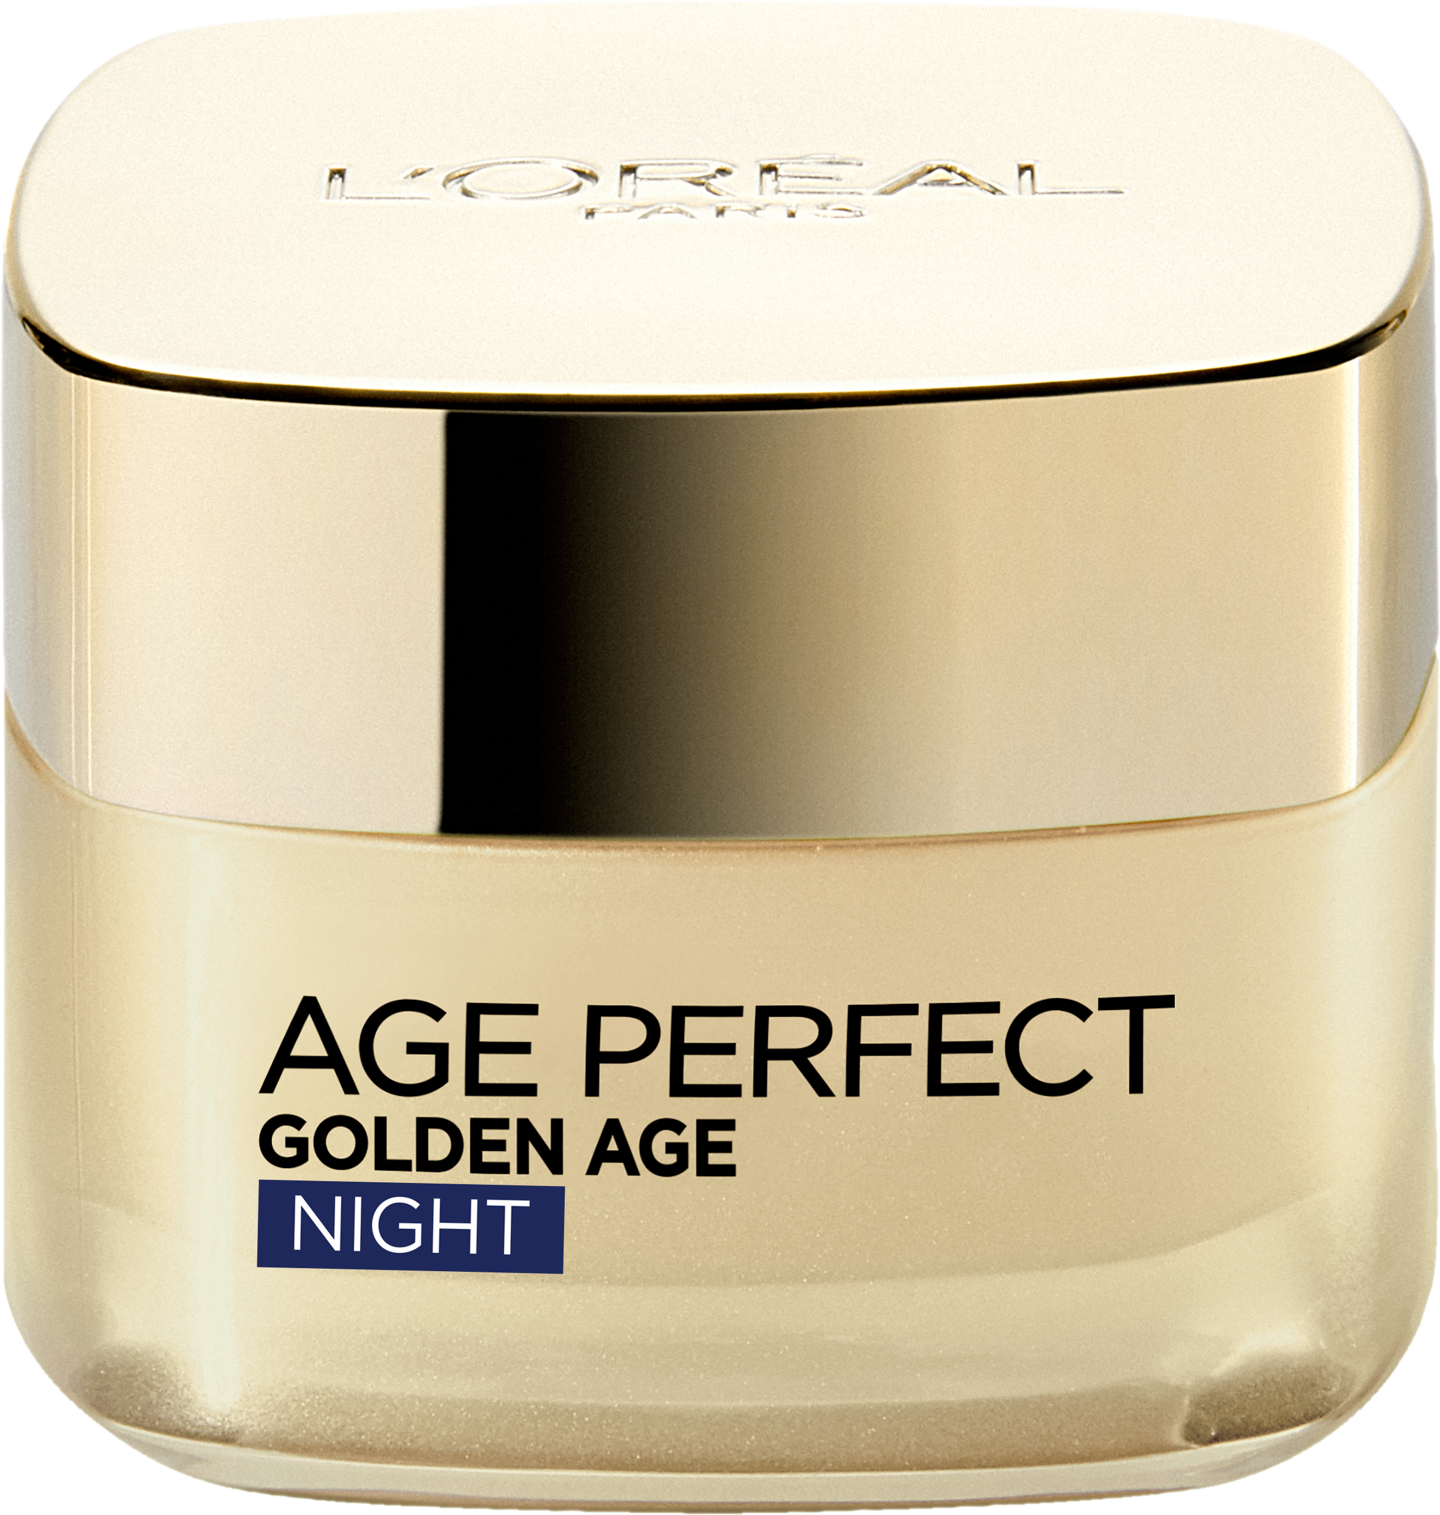 L'Oréal Paris Age Perfect 50ml Golden Age Night vahvistava ja kaunistava yövoide